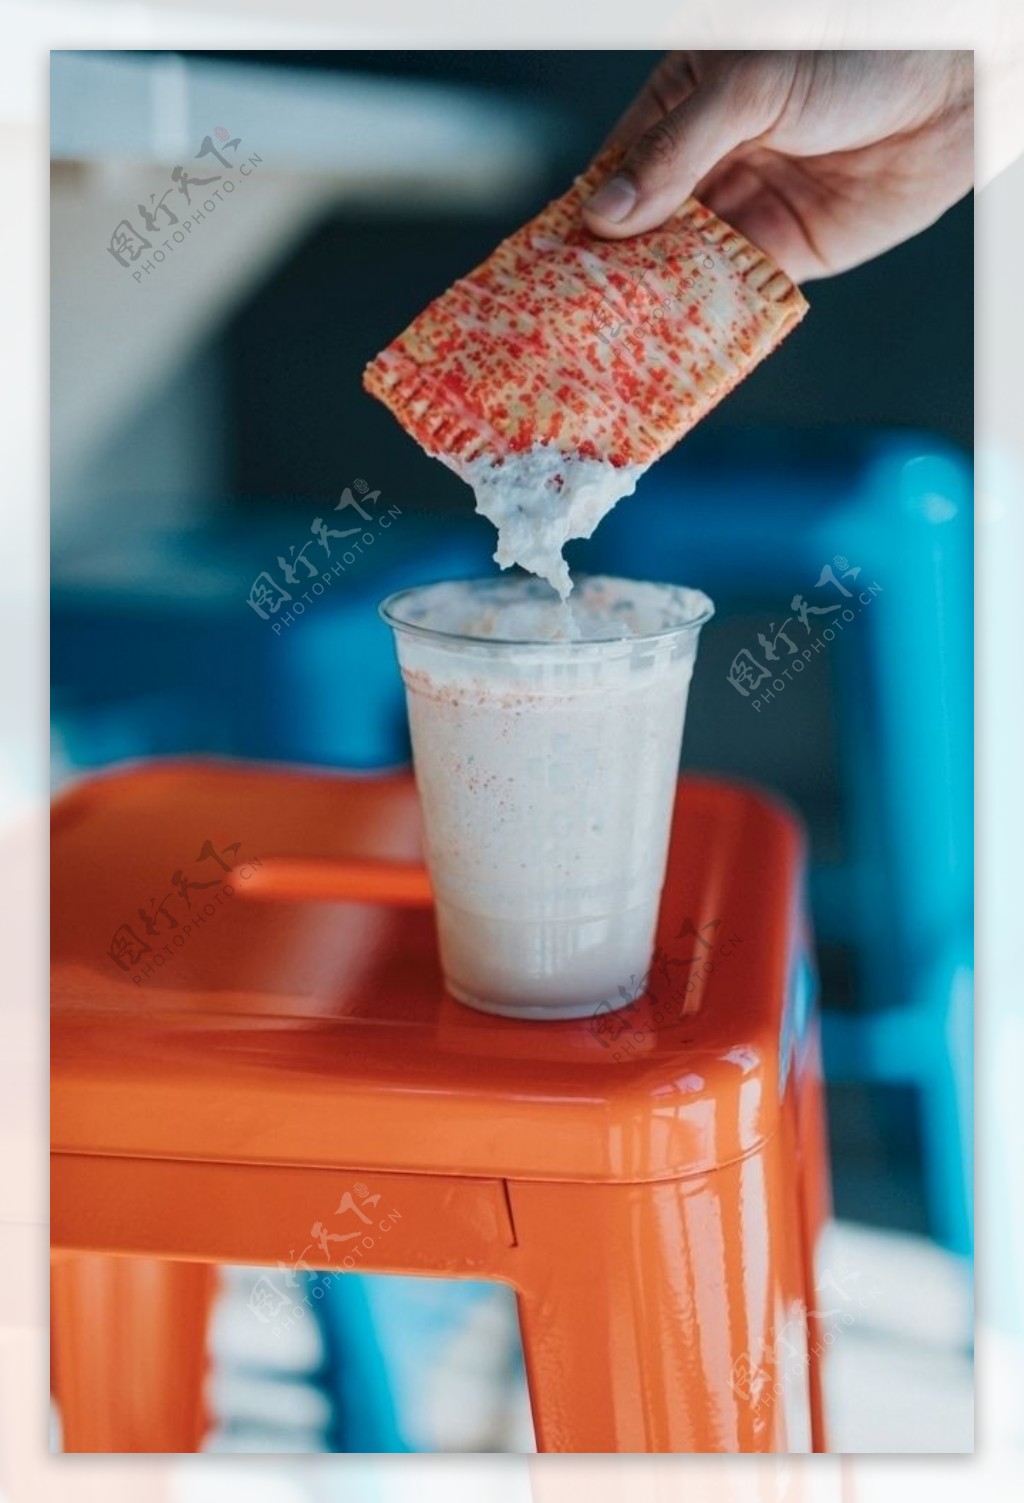 冰峰无糖橙味汽水 一气呵橙 sleek罐 - 西安冰峰饮料股份有限公司